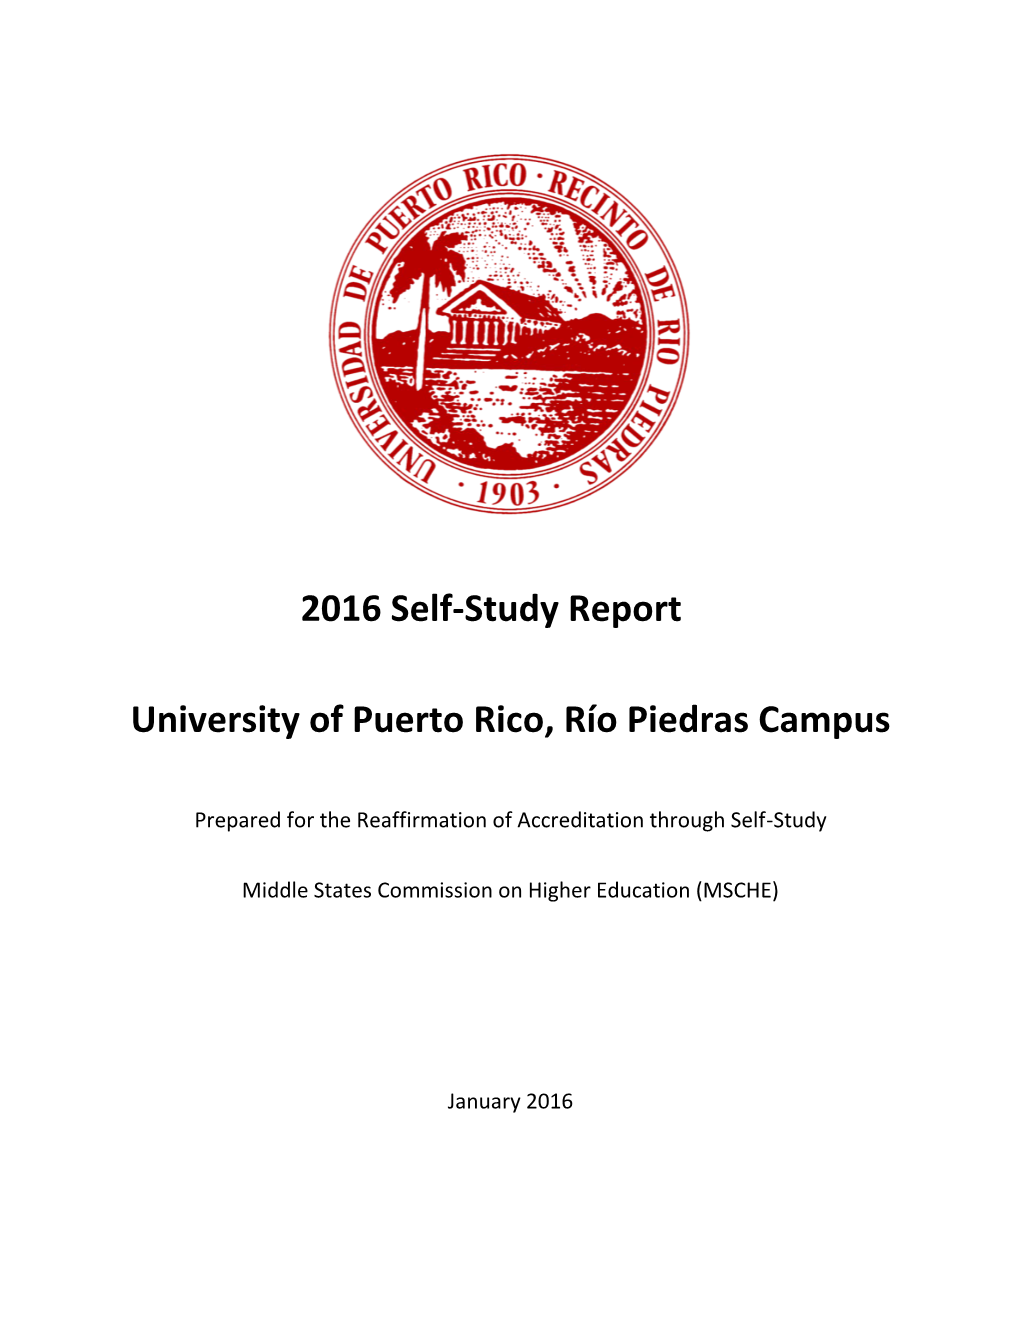 2016 Self-Study Report University of Puerto Rico, Río Piedras Campus